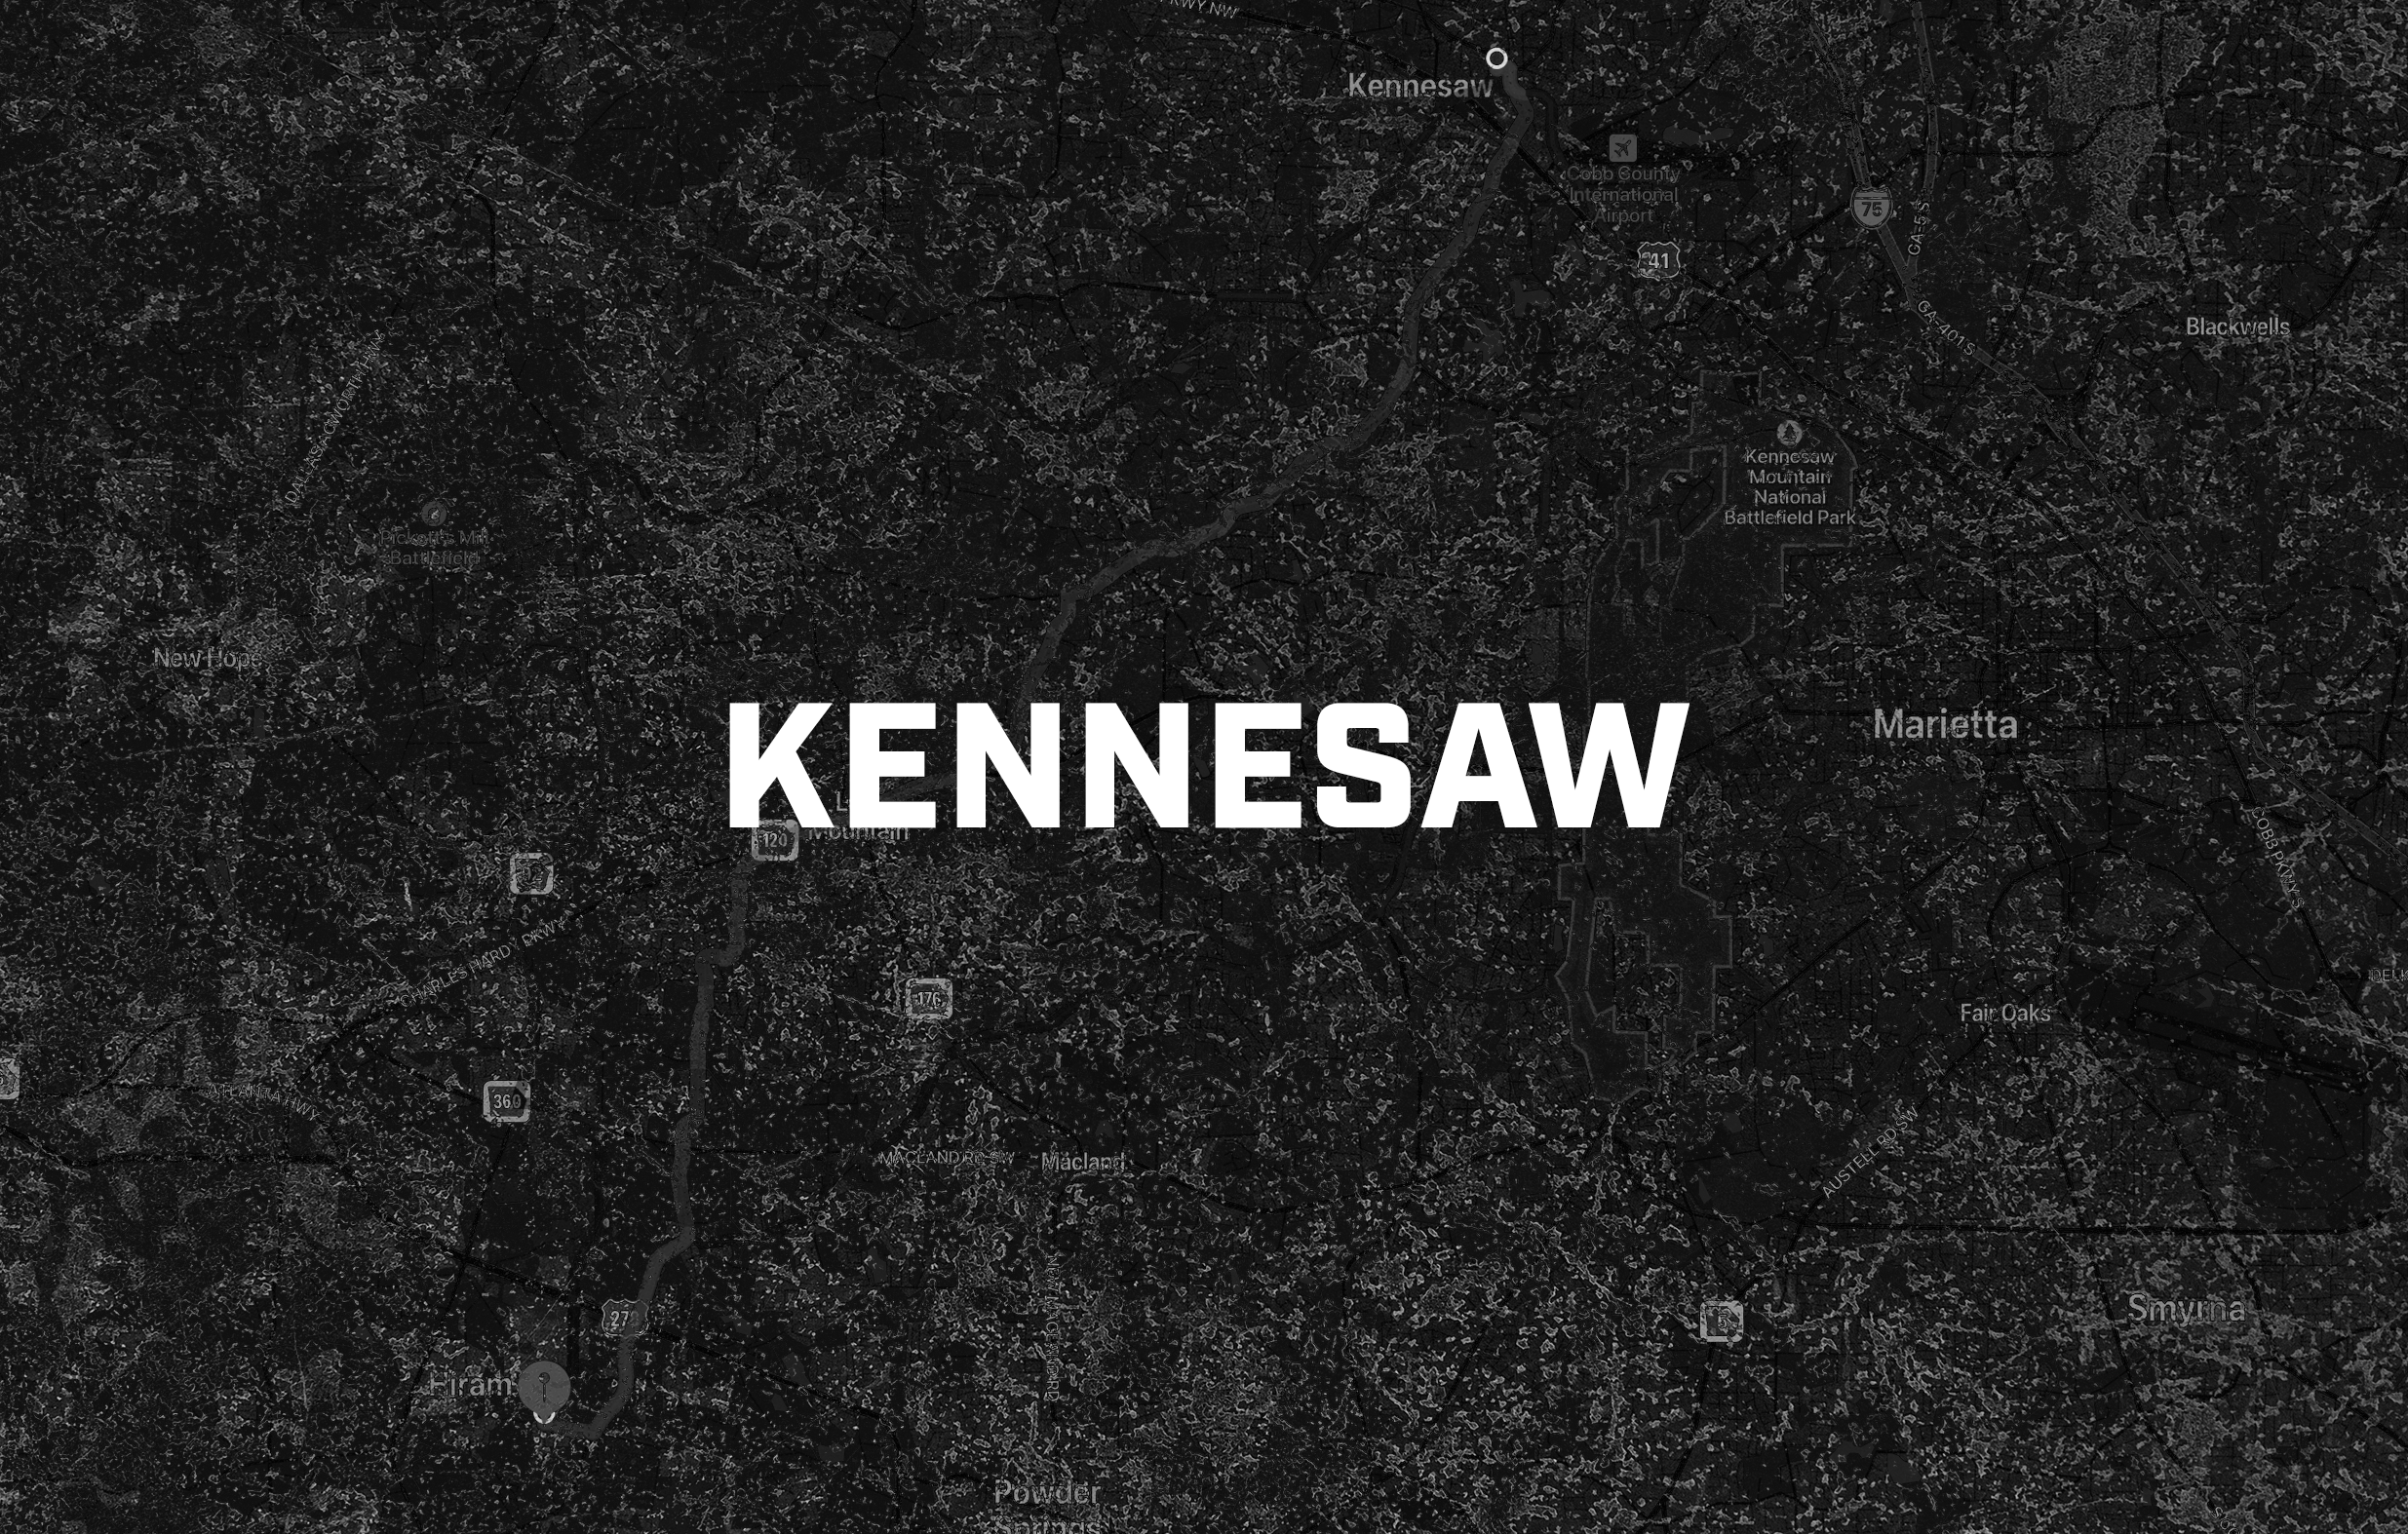 KENNESAW